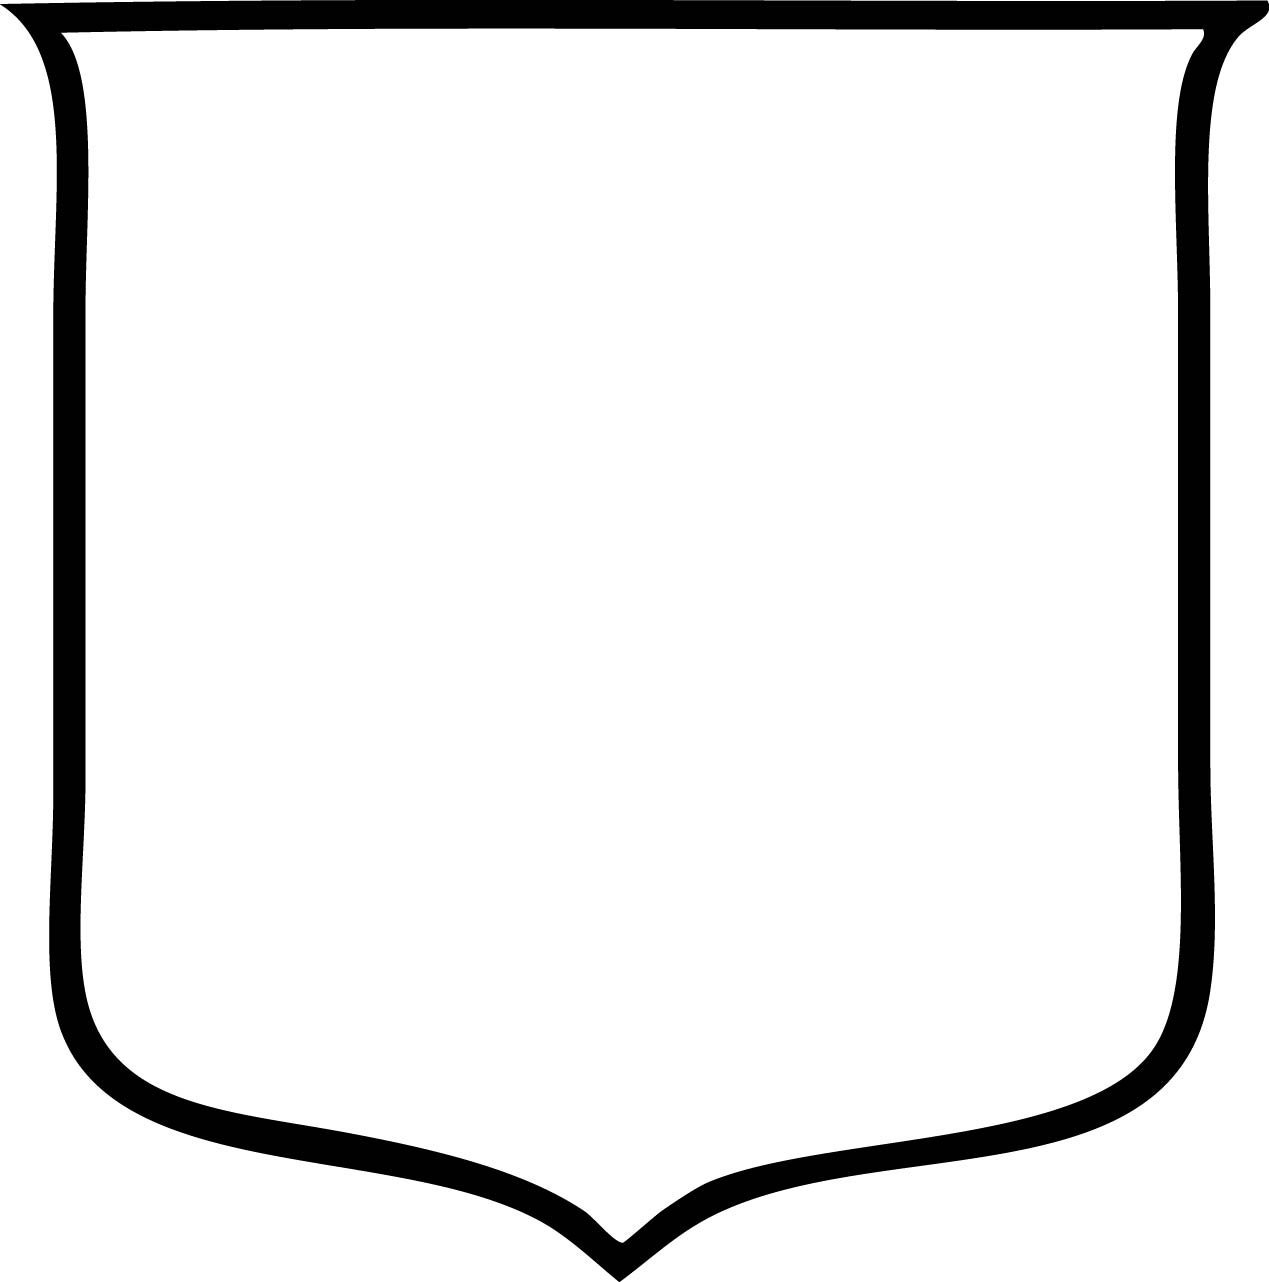 Форма щита для герба